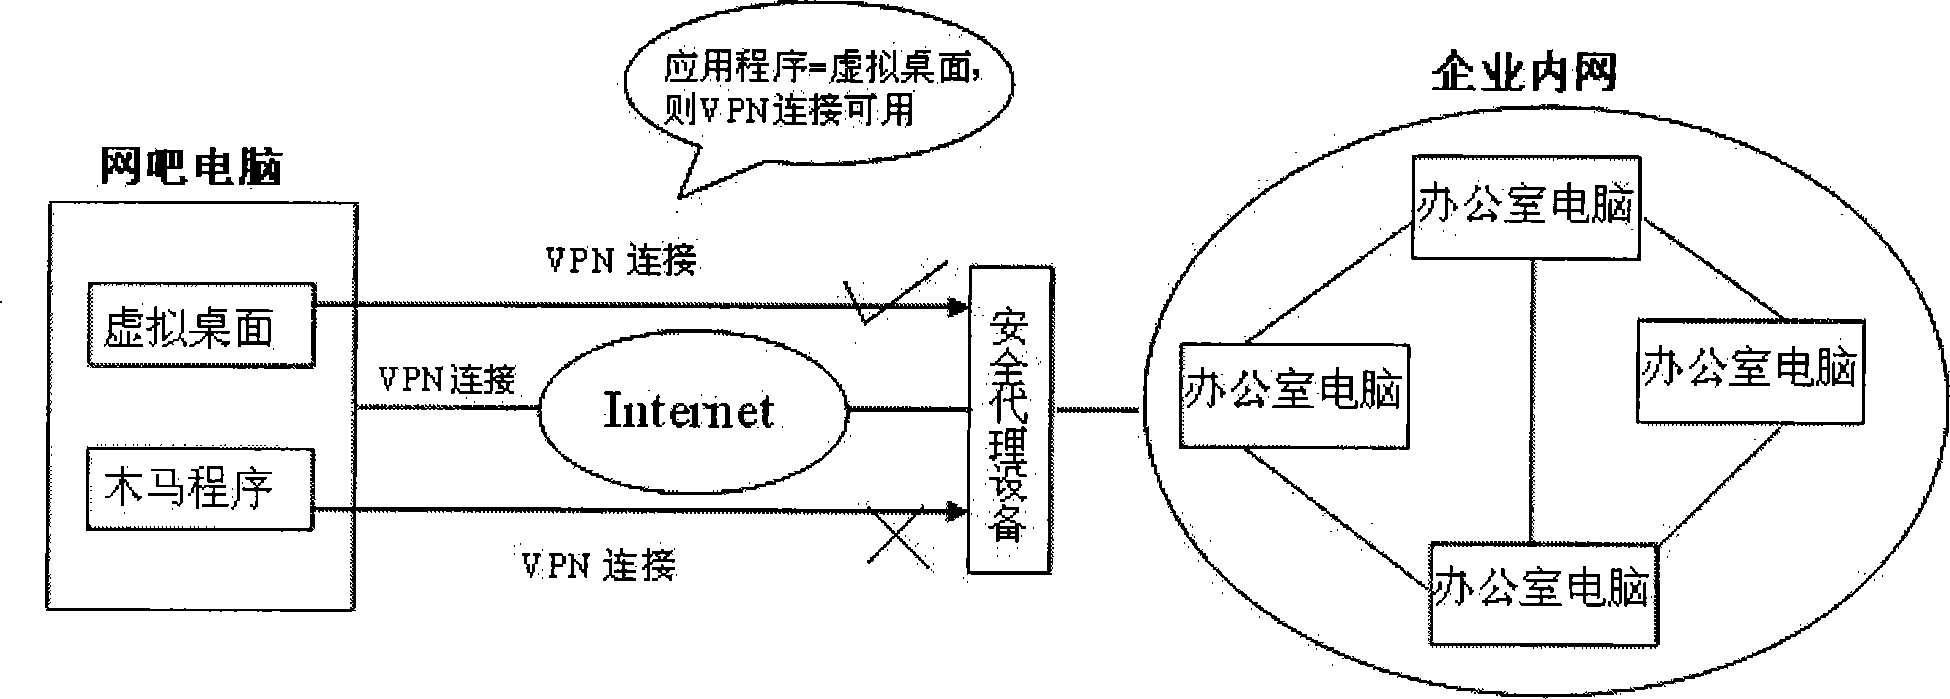 A VPN connection separation method based on operating system desktop